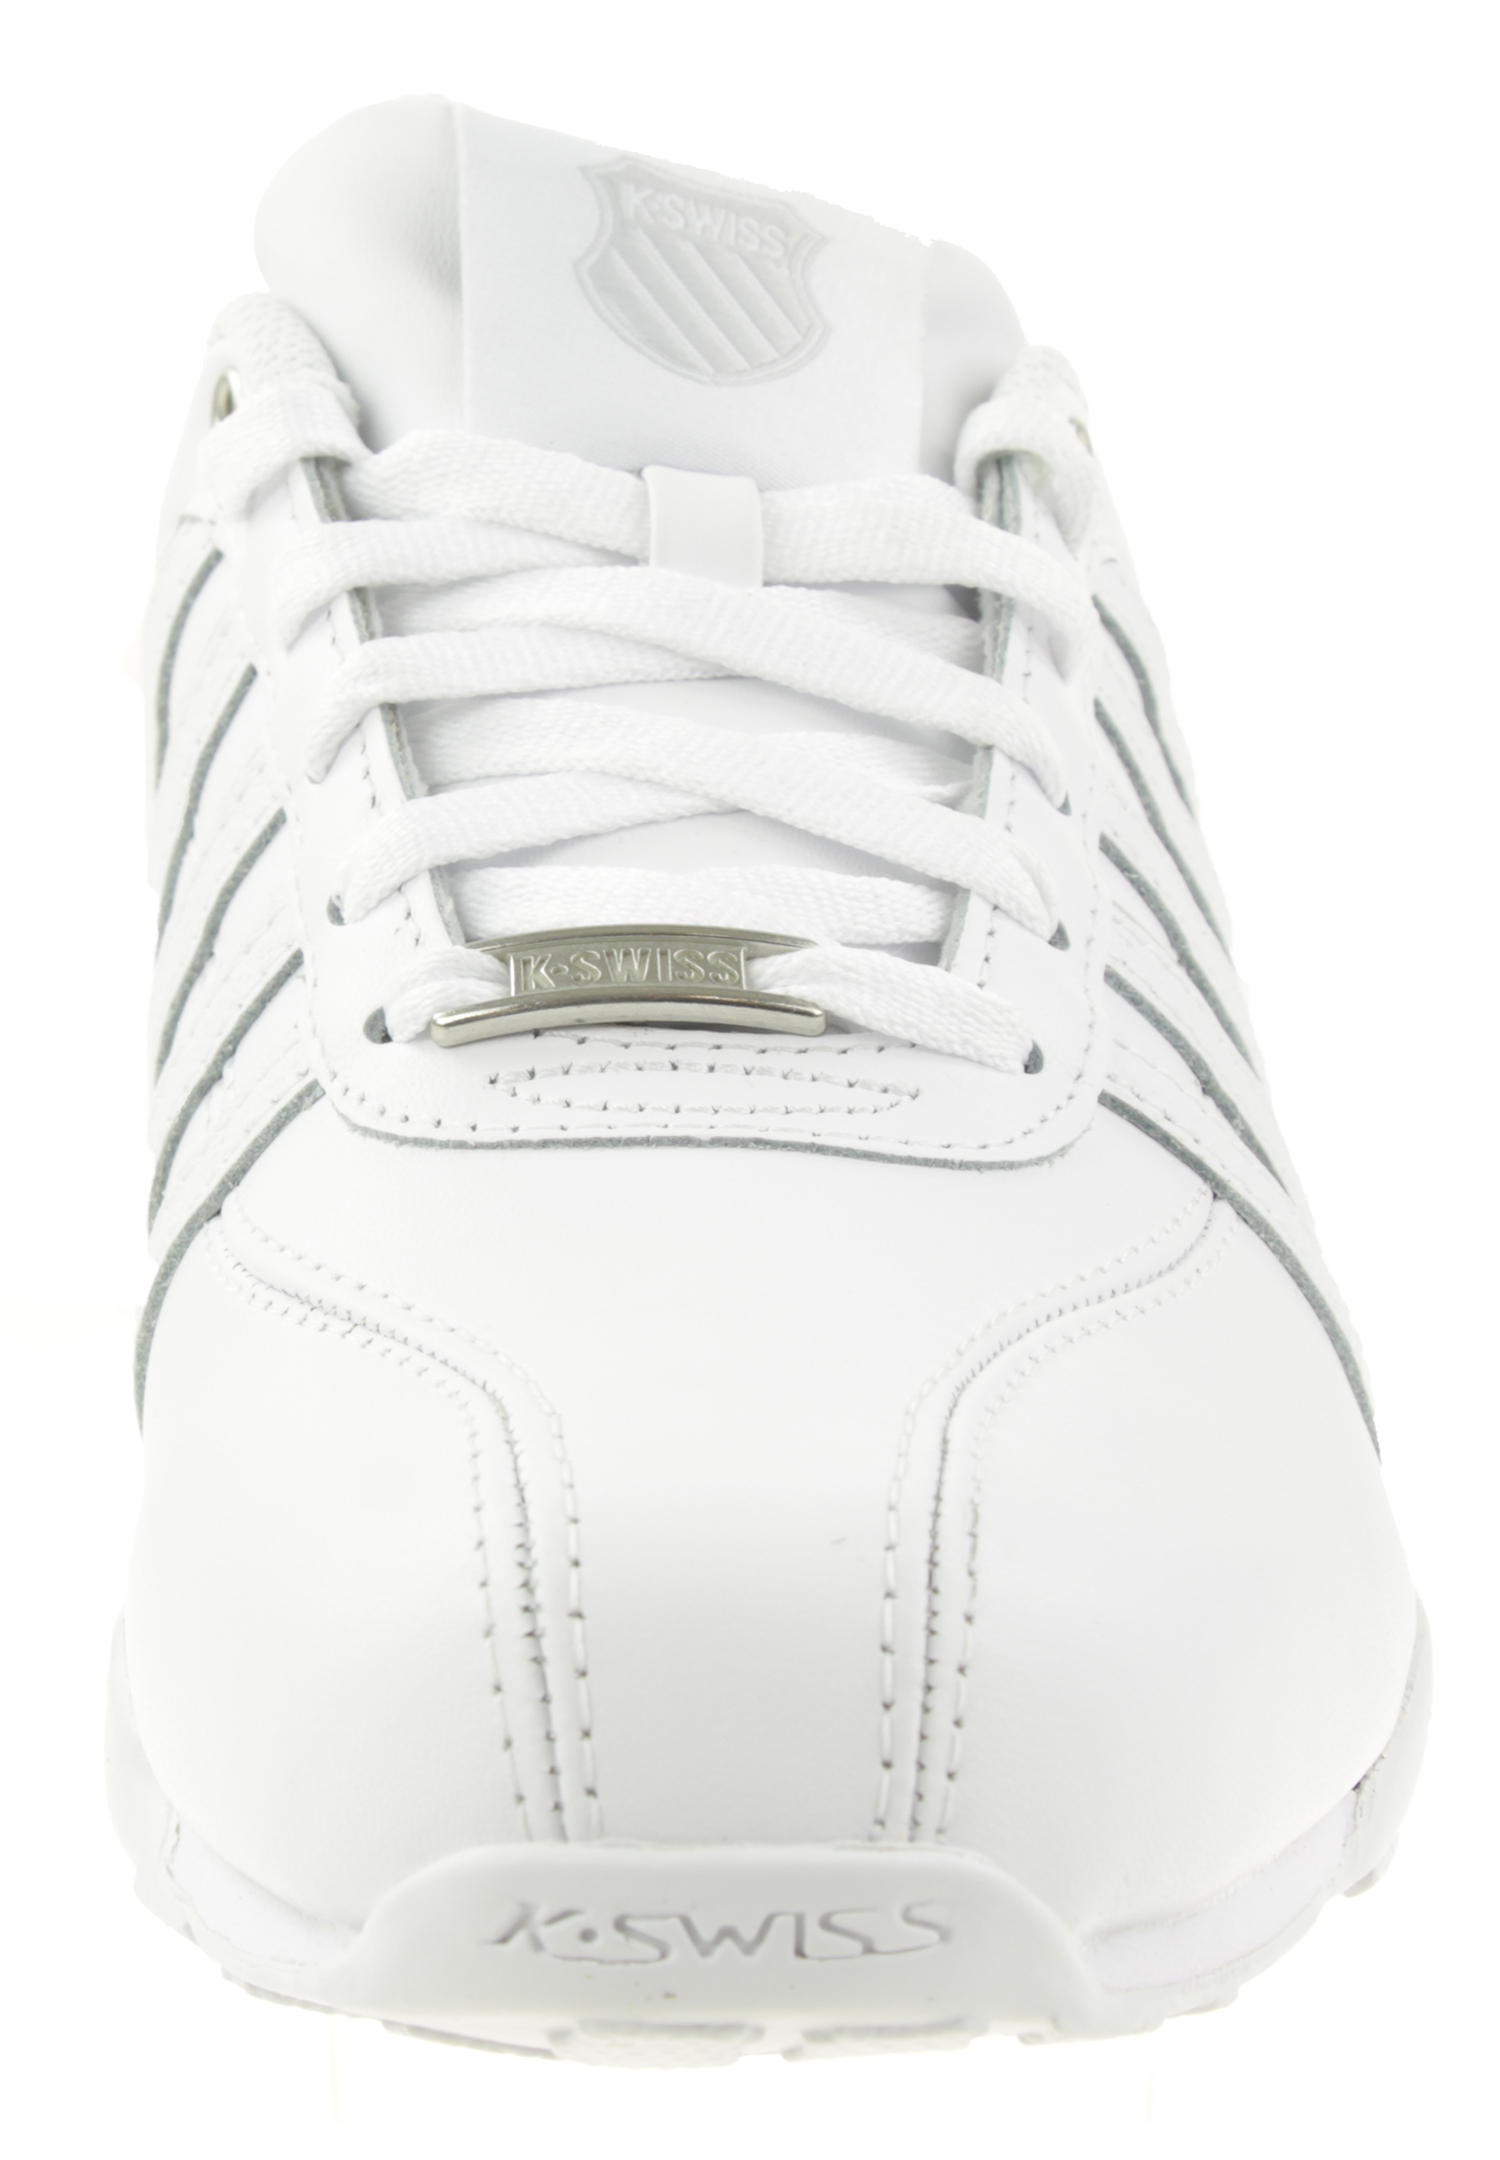 K-SWISS Arvee 1.5 Herren Sneaker Sportschuhe 02453-980-M Weiß / Grau